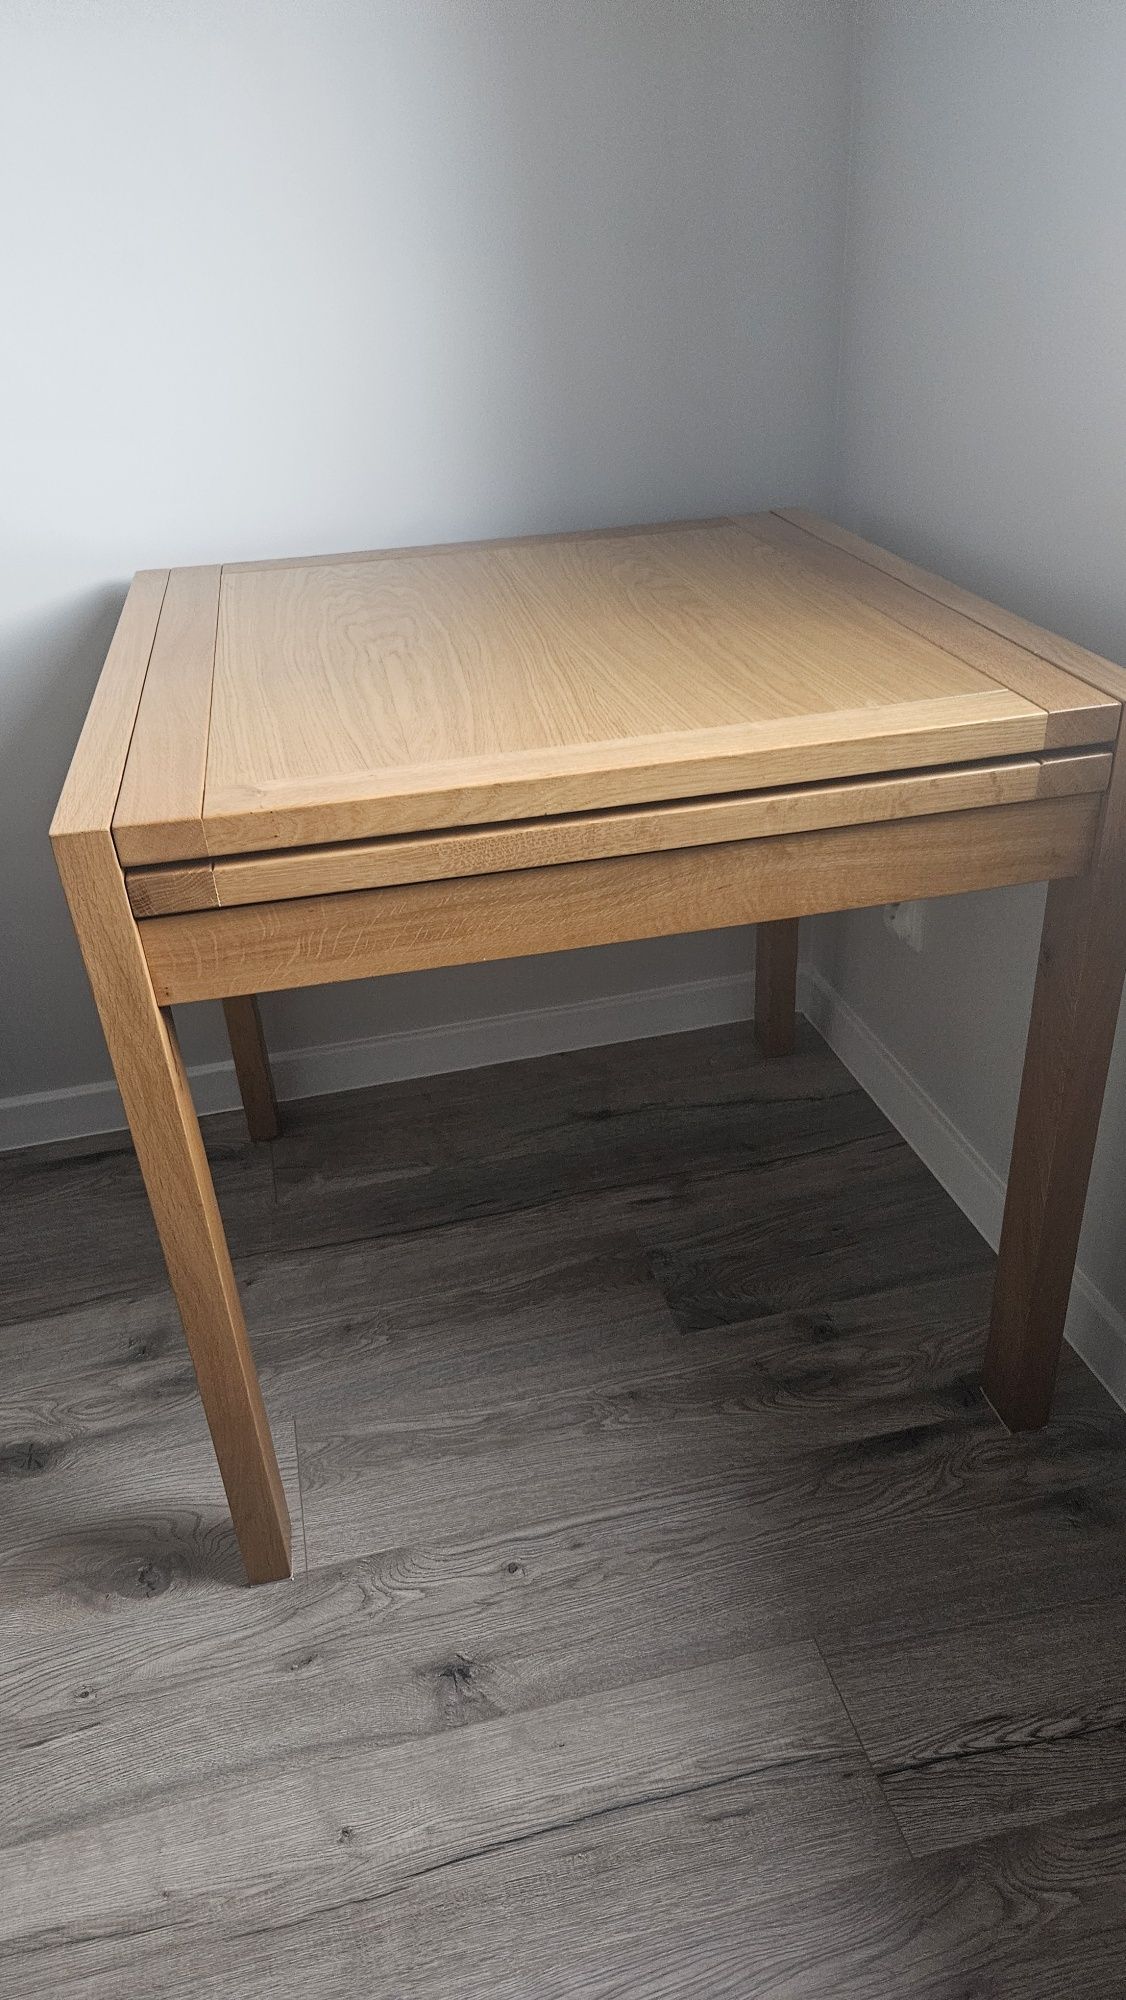 Stół drewniany dębowy dąb matkowski 80 cm x 80 cm Kwadratowy stolik